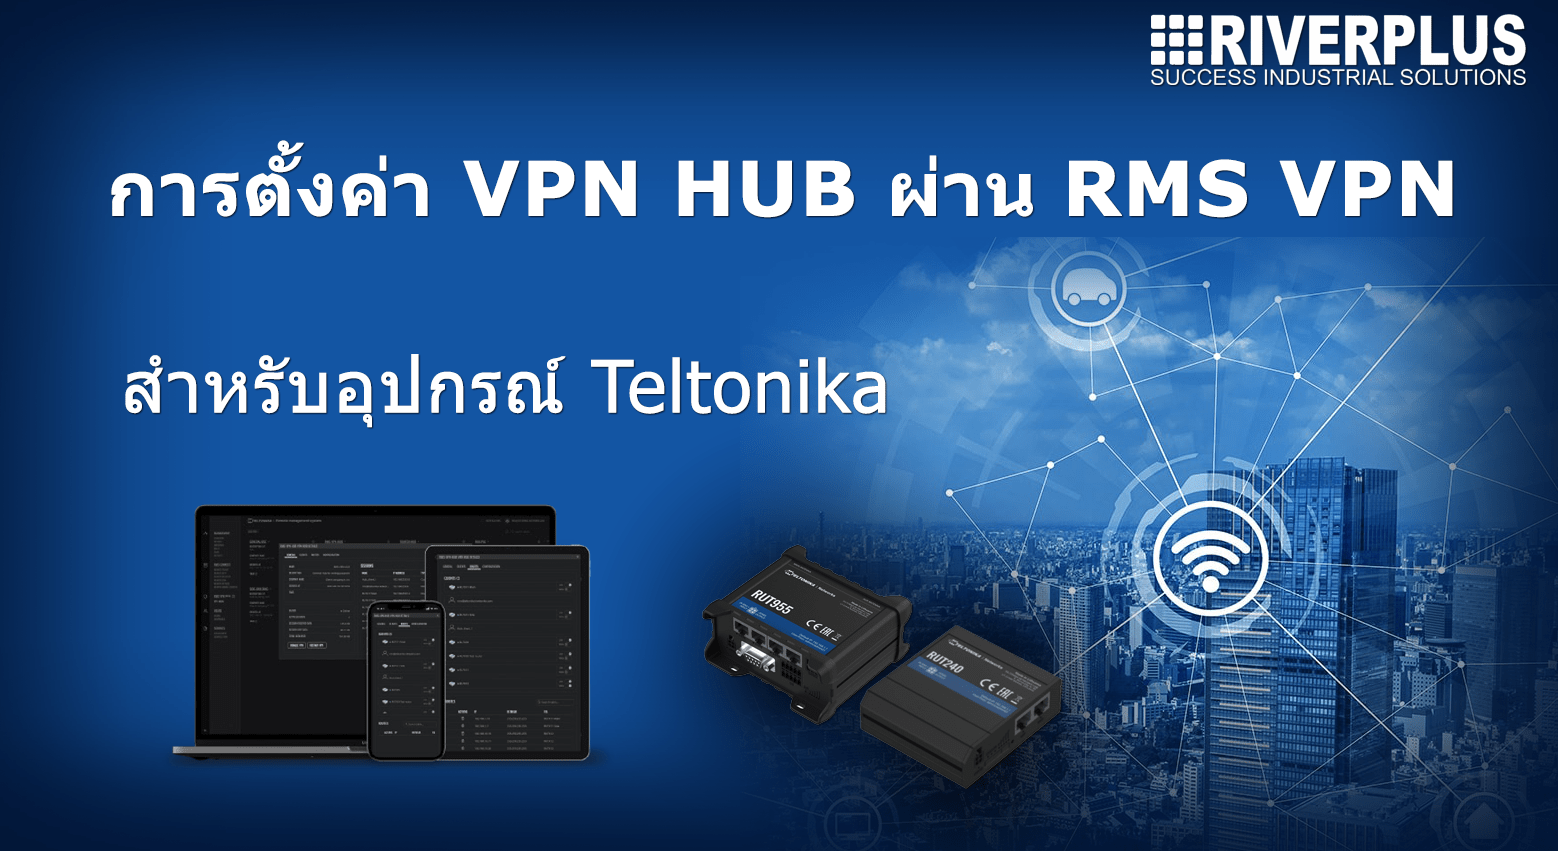 การตั้งค่า VPN ผ่านบริการ RMS VPN ของ TELTONIKA ROUTER